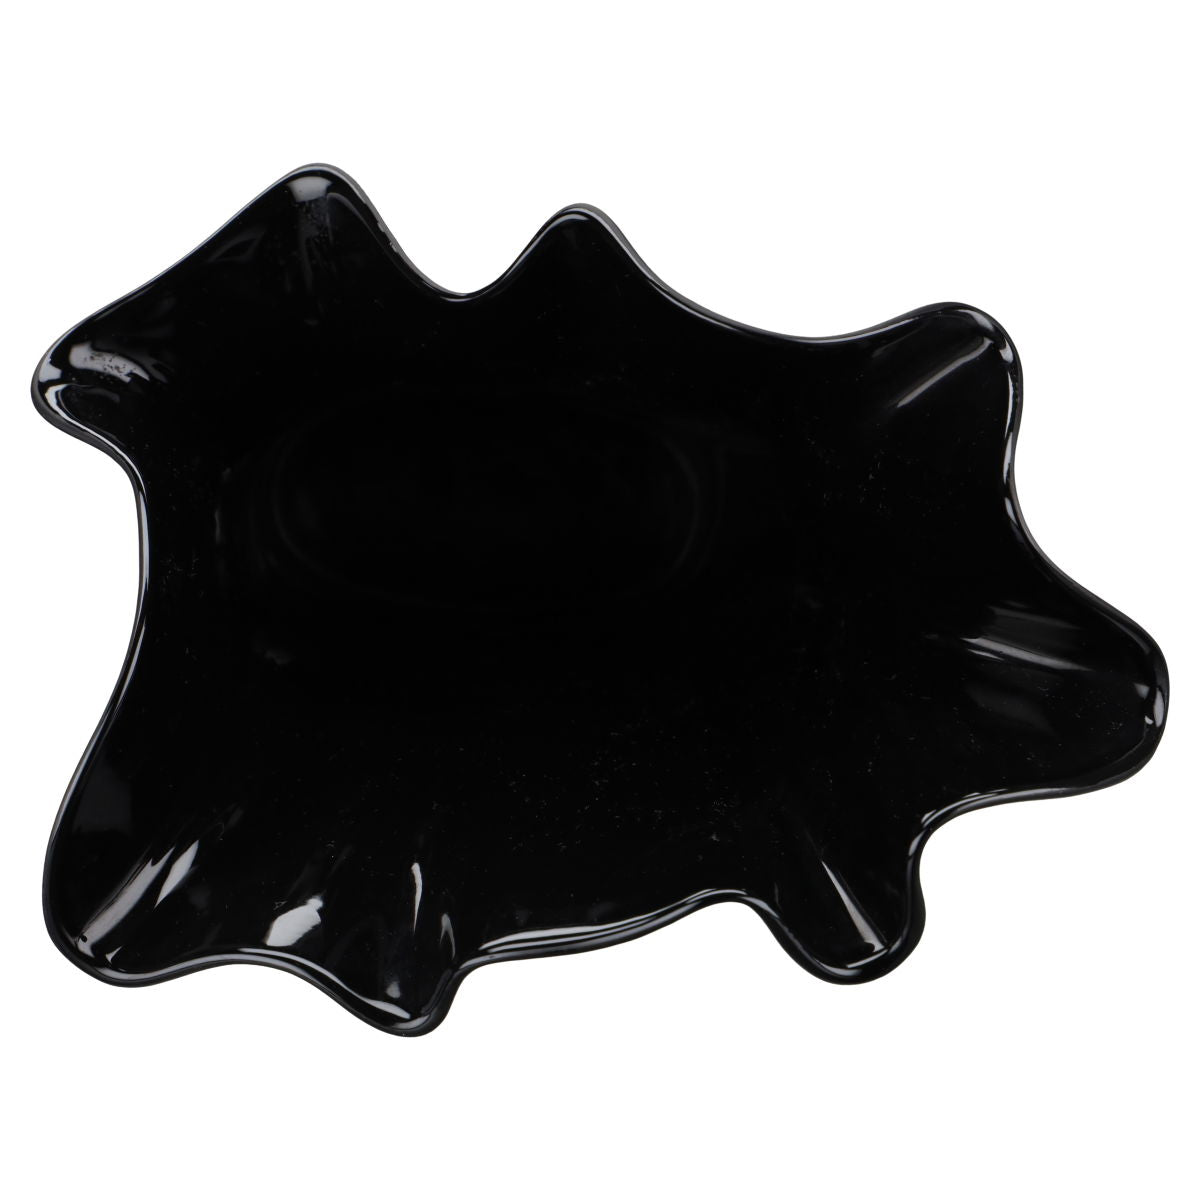 Vase Vase asymmetrisch schwarz mittelgroß